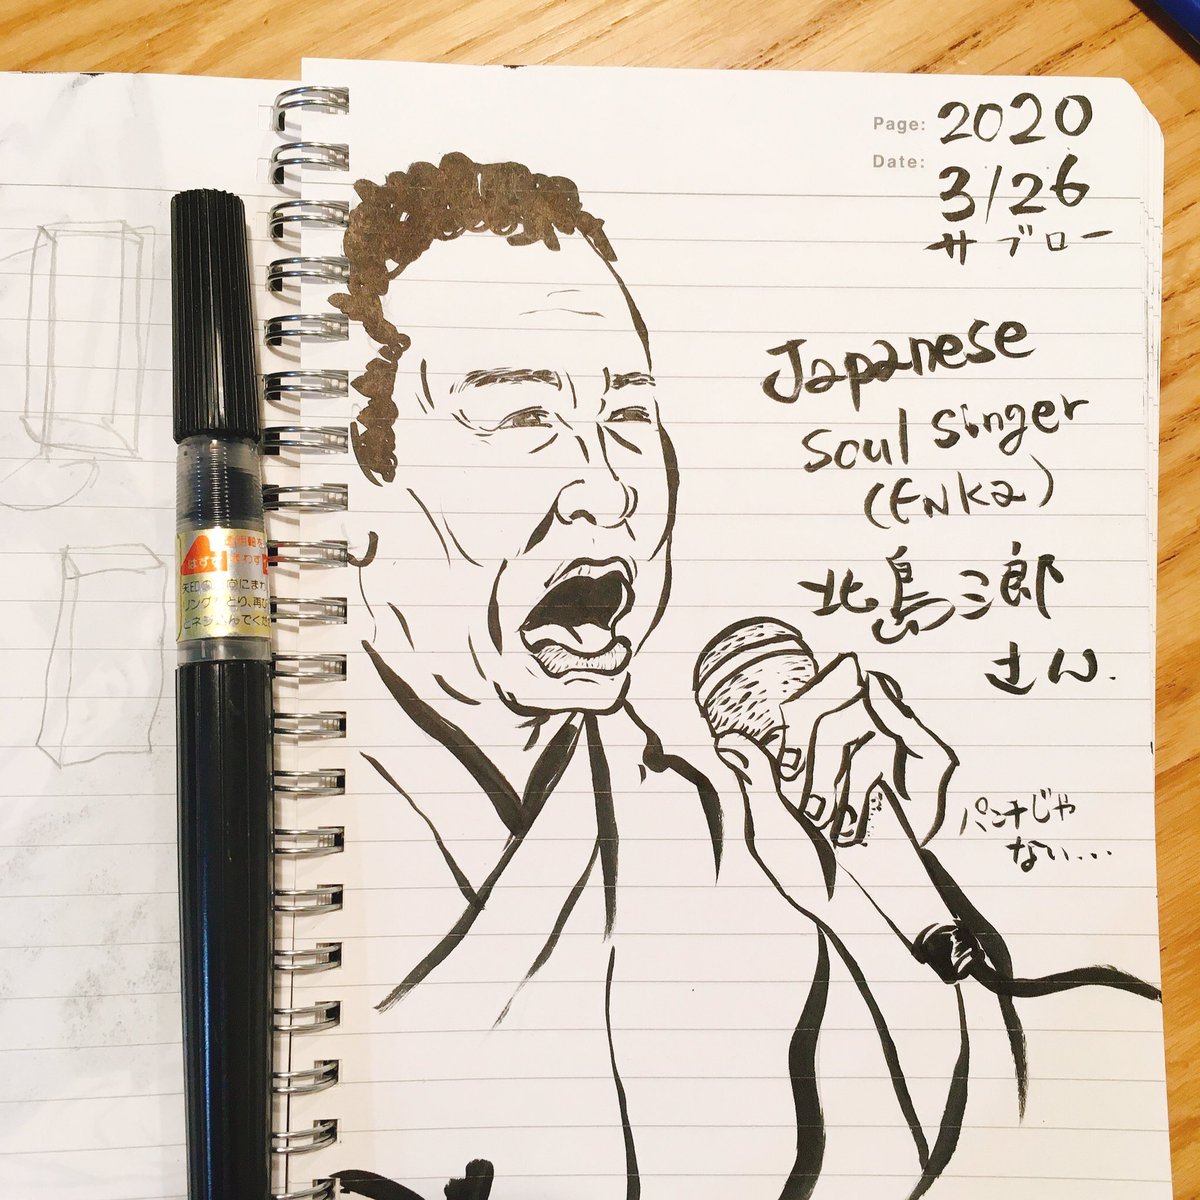 アキタヤセイイチ Akitaya178 This Is Saburo Kitajima Enka Singer Enka Is Japanese Soul Music Portrait Illustration Drawing サブロー 3 26 の日ということで 北島三郎さんを パンチのイメージでしたが あれは木梨憲武さん由来なのかもね